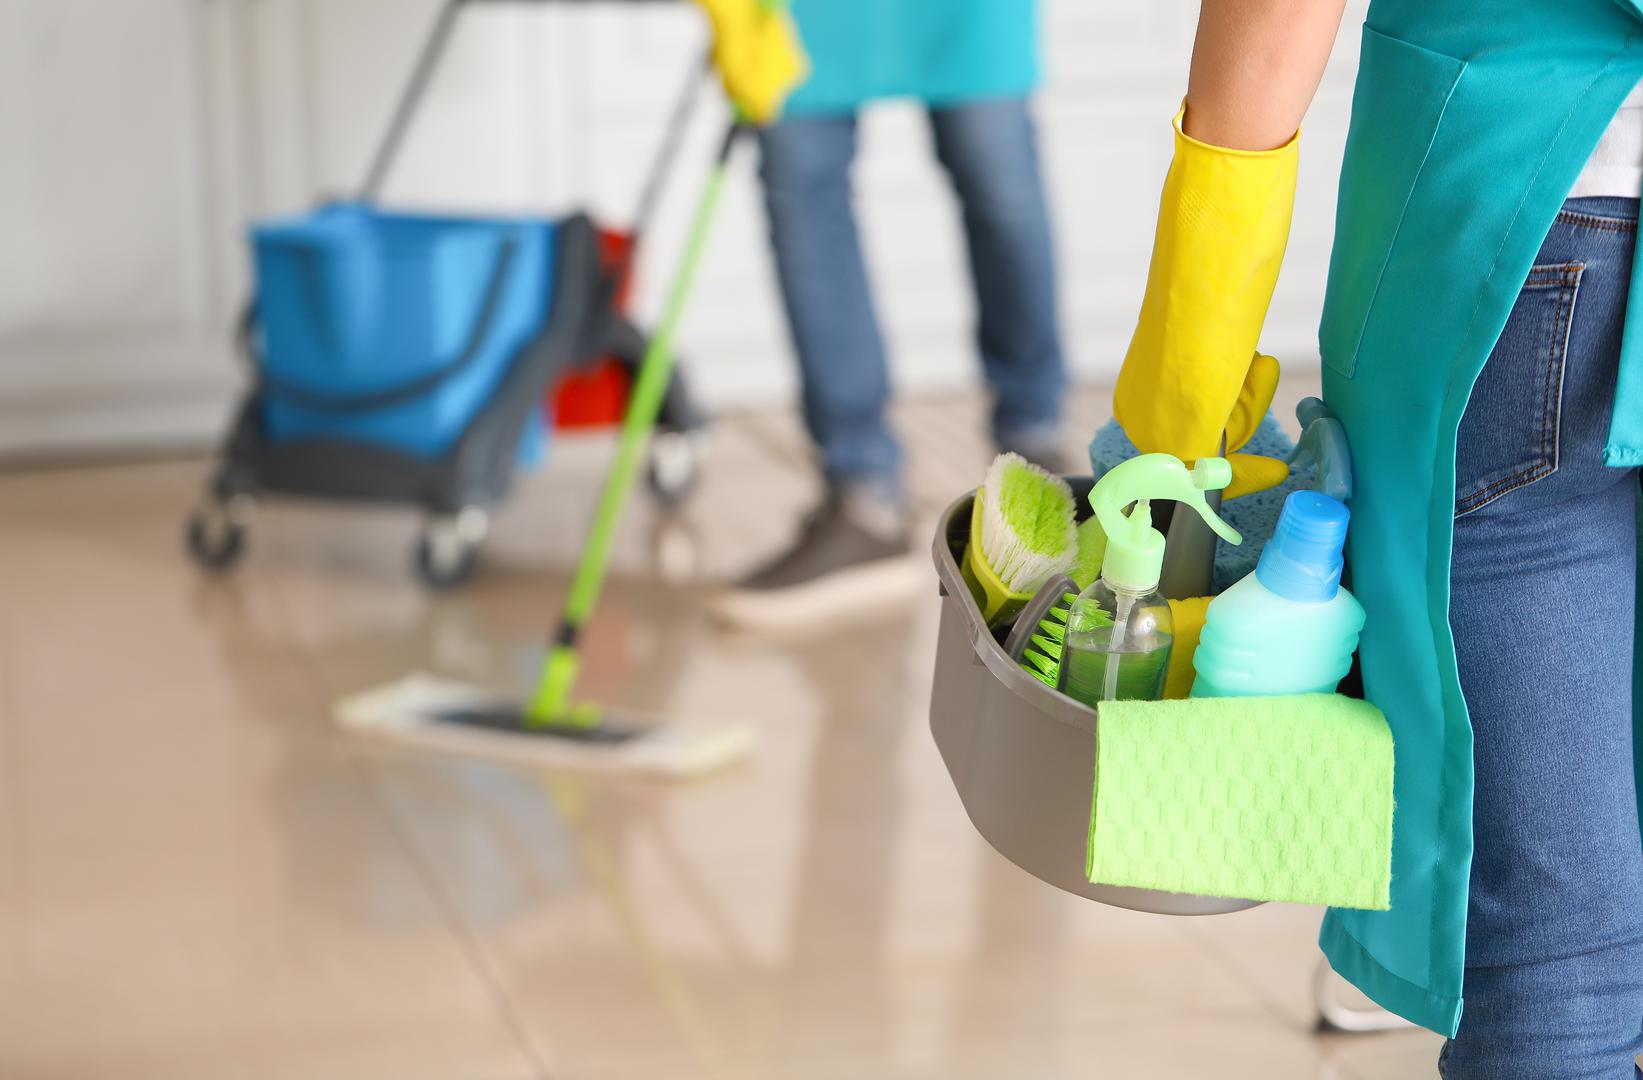 Svi tražimo načine da čišćenje učinimo bržim i lakšim. No, vjerovali ili ne, ponekad vam korištenje određenih 'prečaca' dugoročno otežava. Vrijeme je da se riješite određenih navika prilikom čišćenja, kako biste brže došli do čišćeg doma. Stručnjak za čišćenje otkrio je u čemu biste sve mogli griješiti, piše The Spruce.